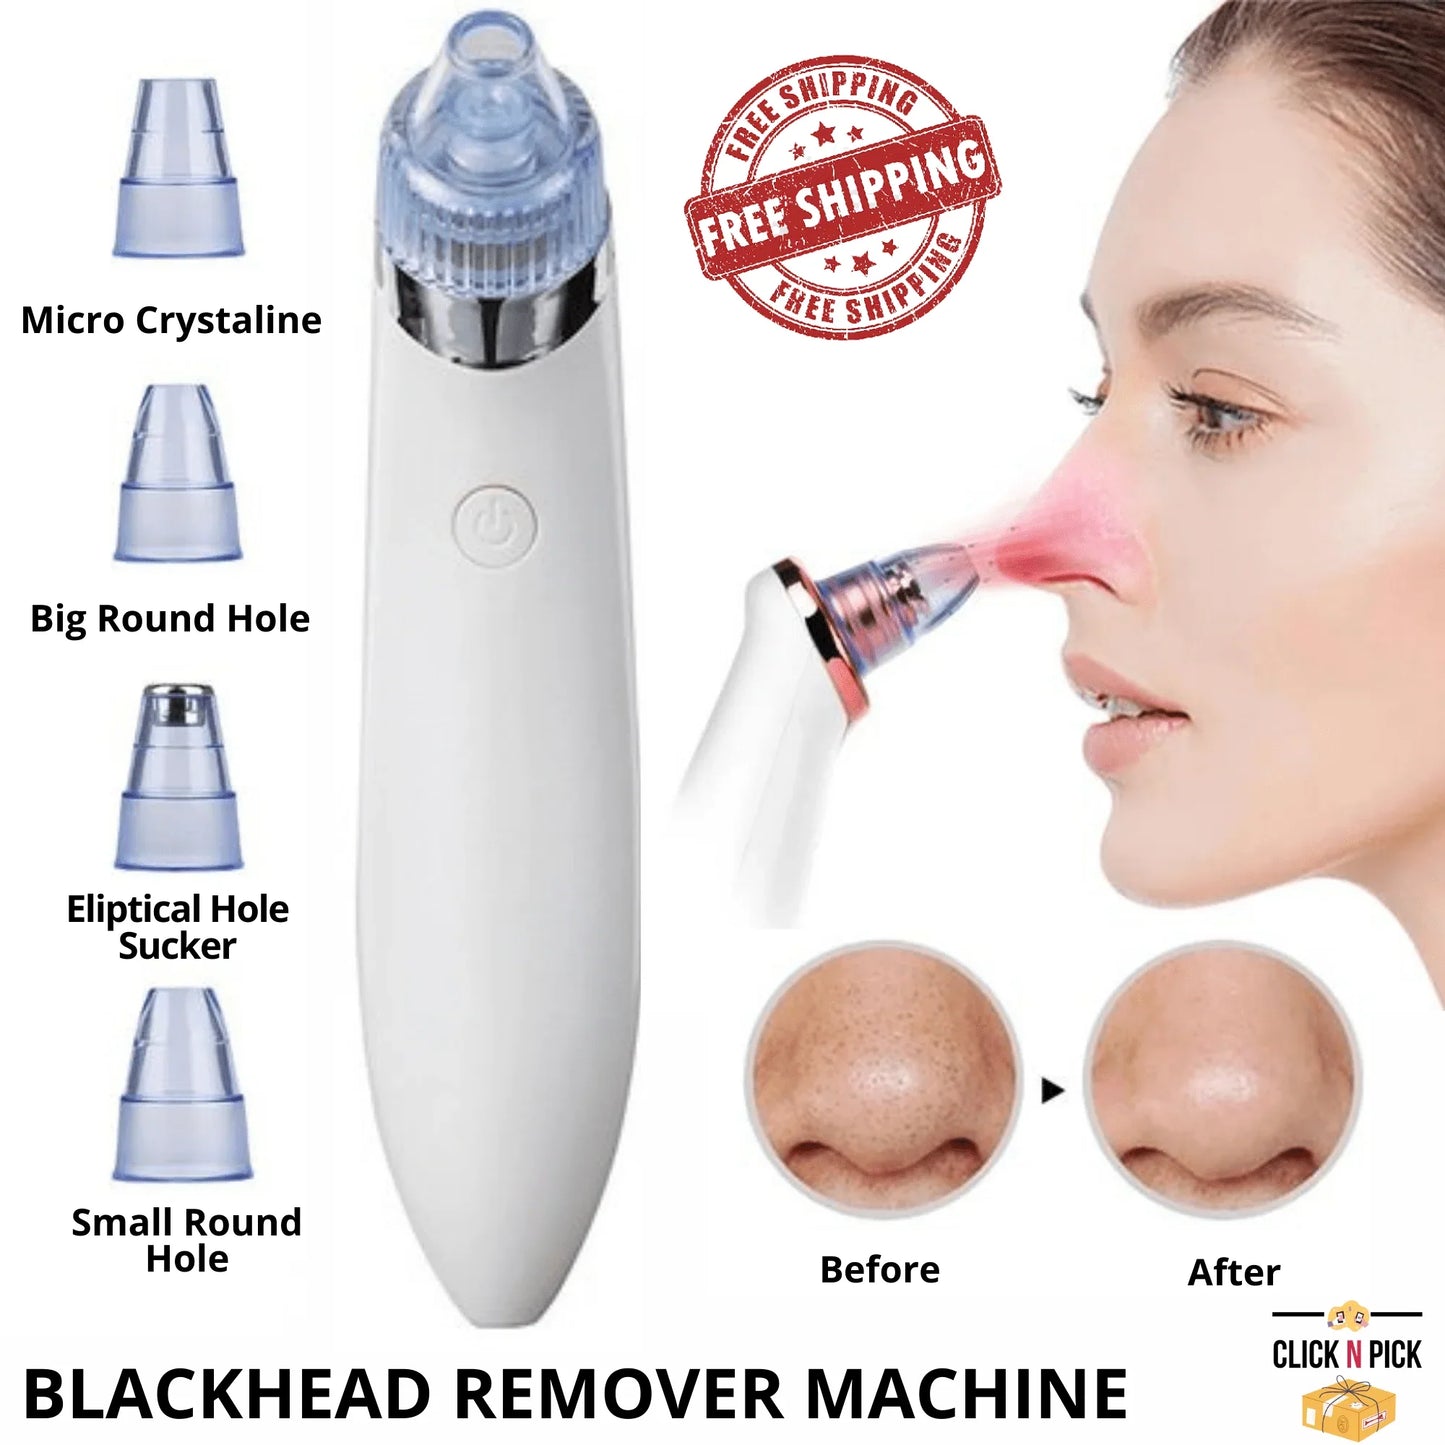 Black Head remover